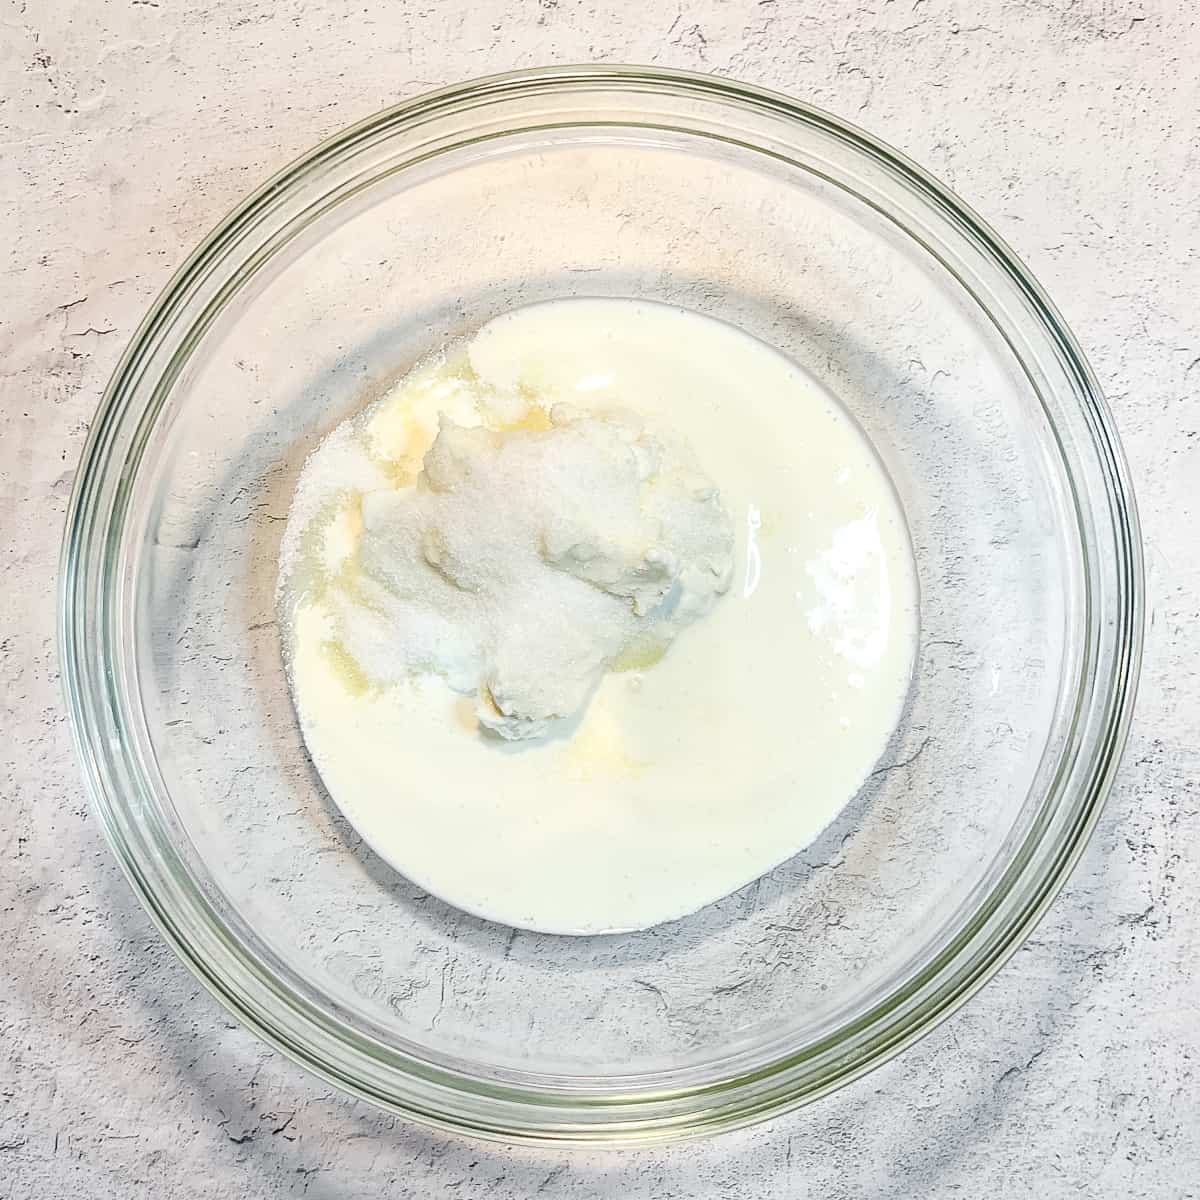 heavy cream, greek yogurt, and sugar in a glass bowl.